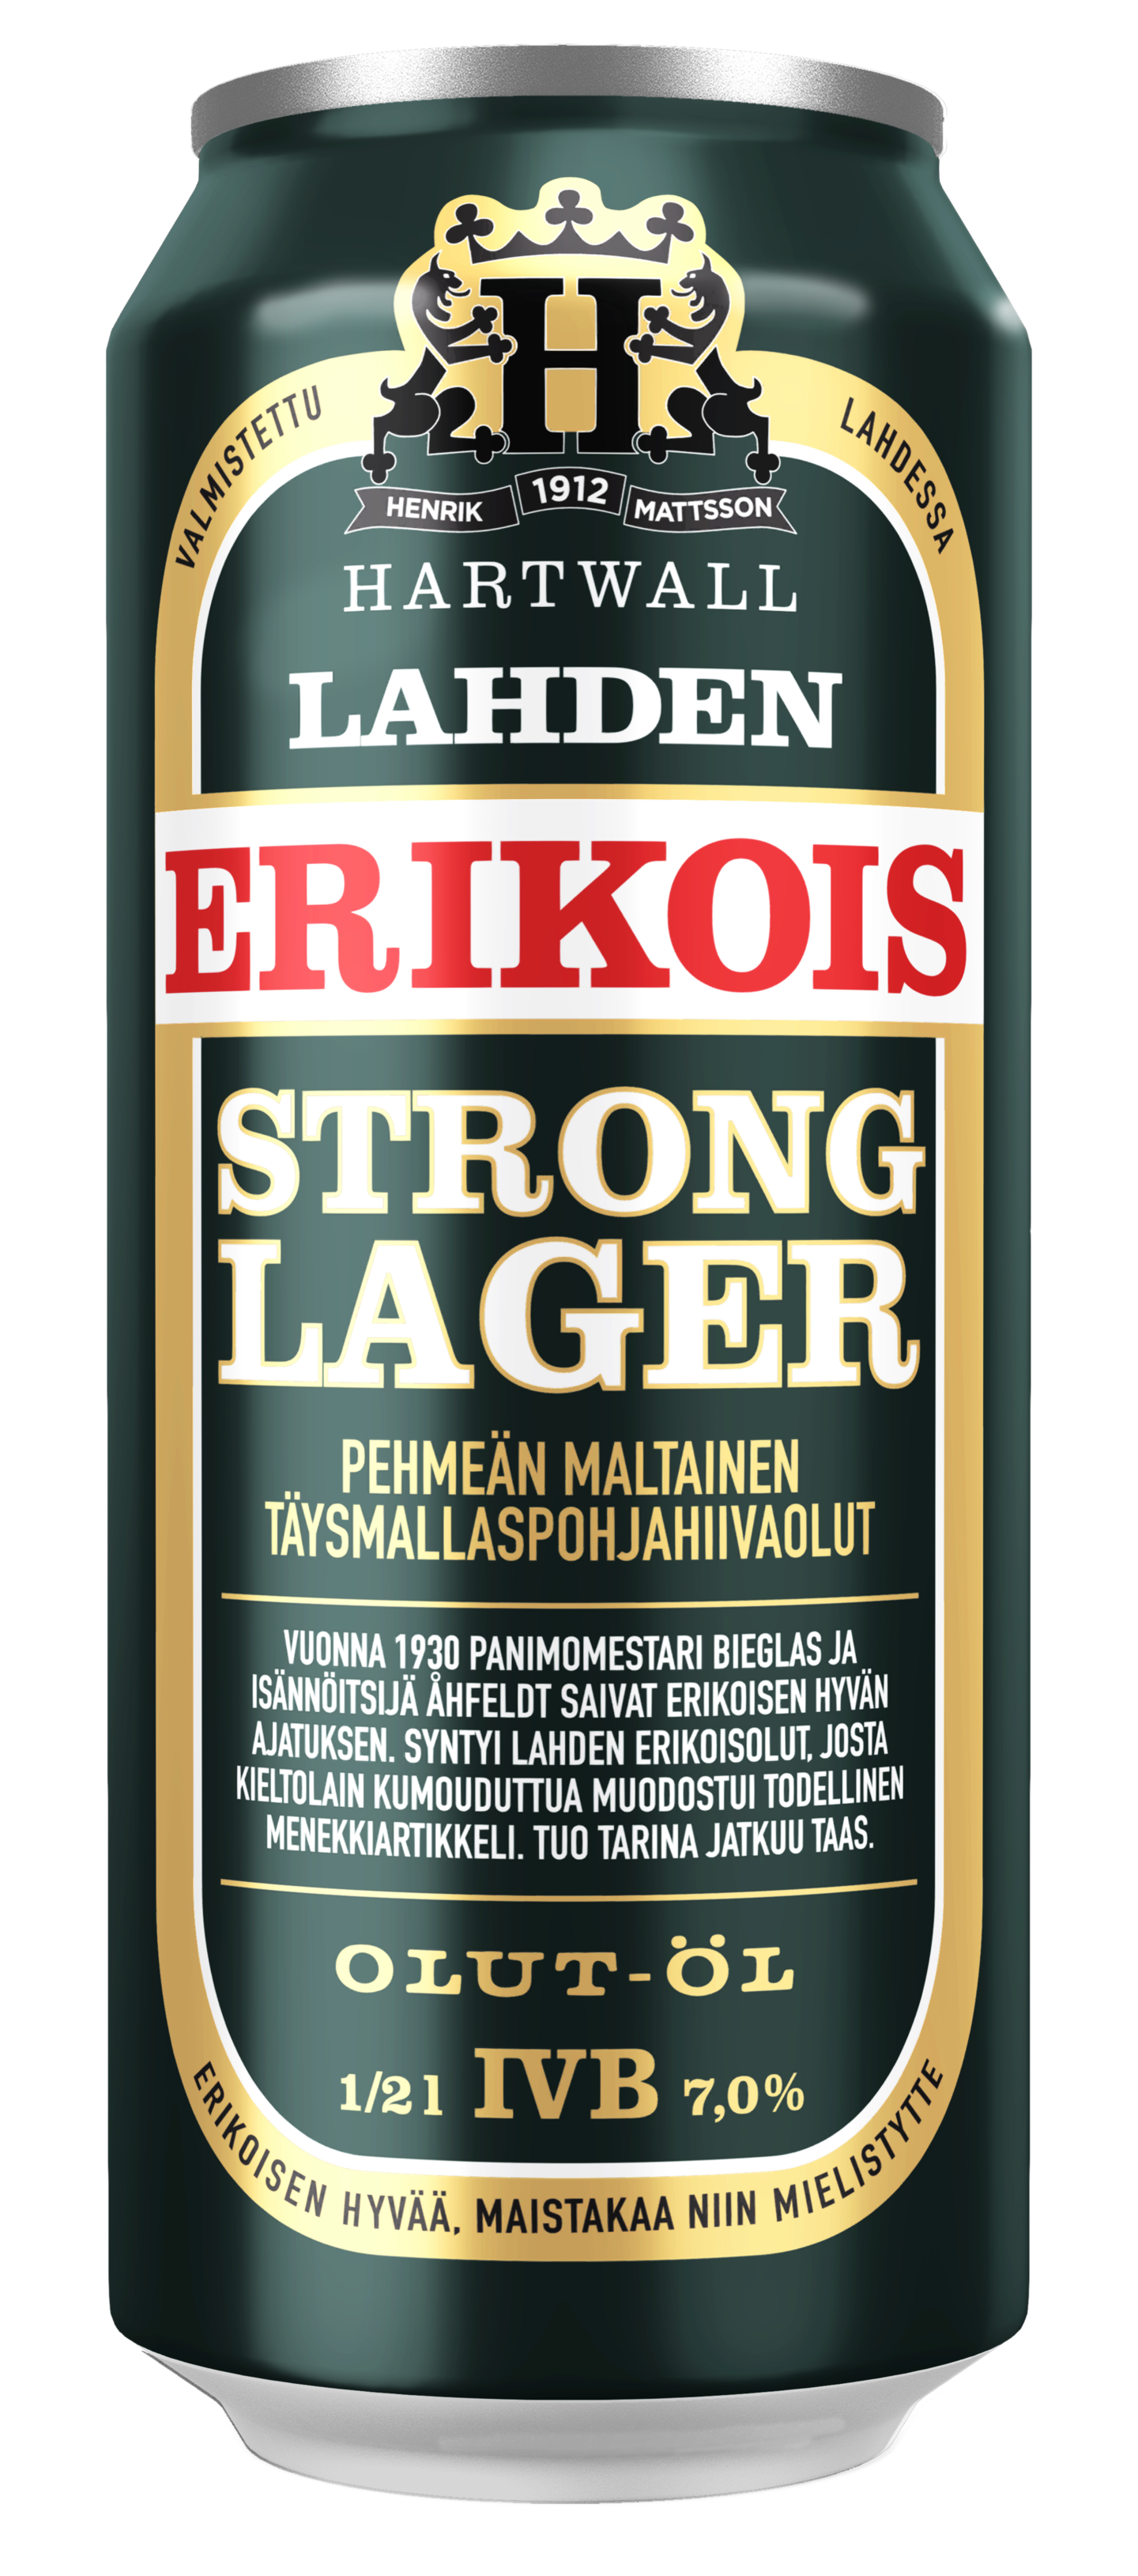 Lahden Erikois Strong Lager 7% 0,5l